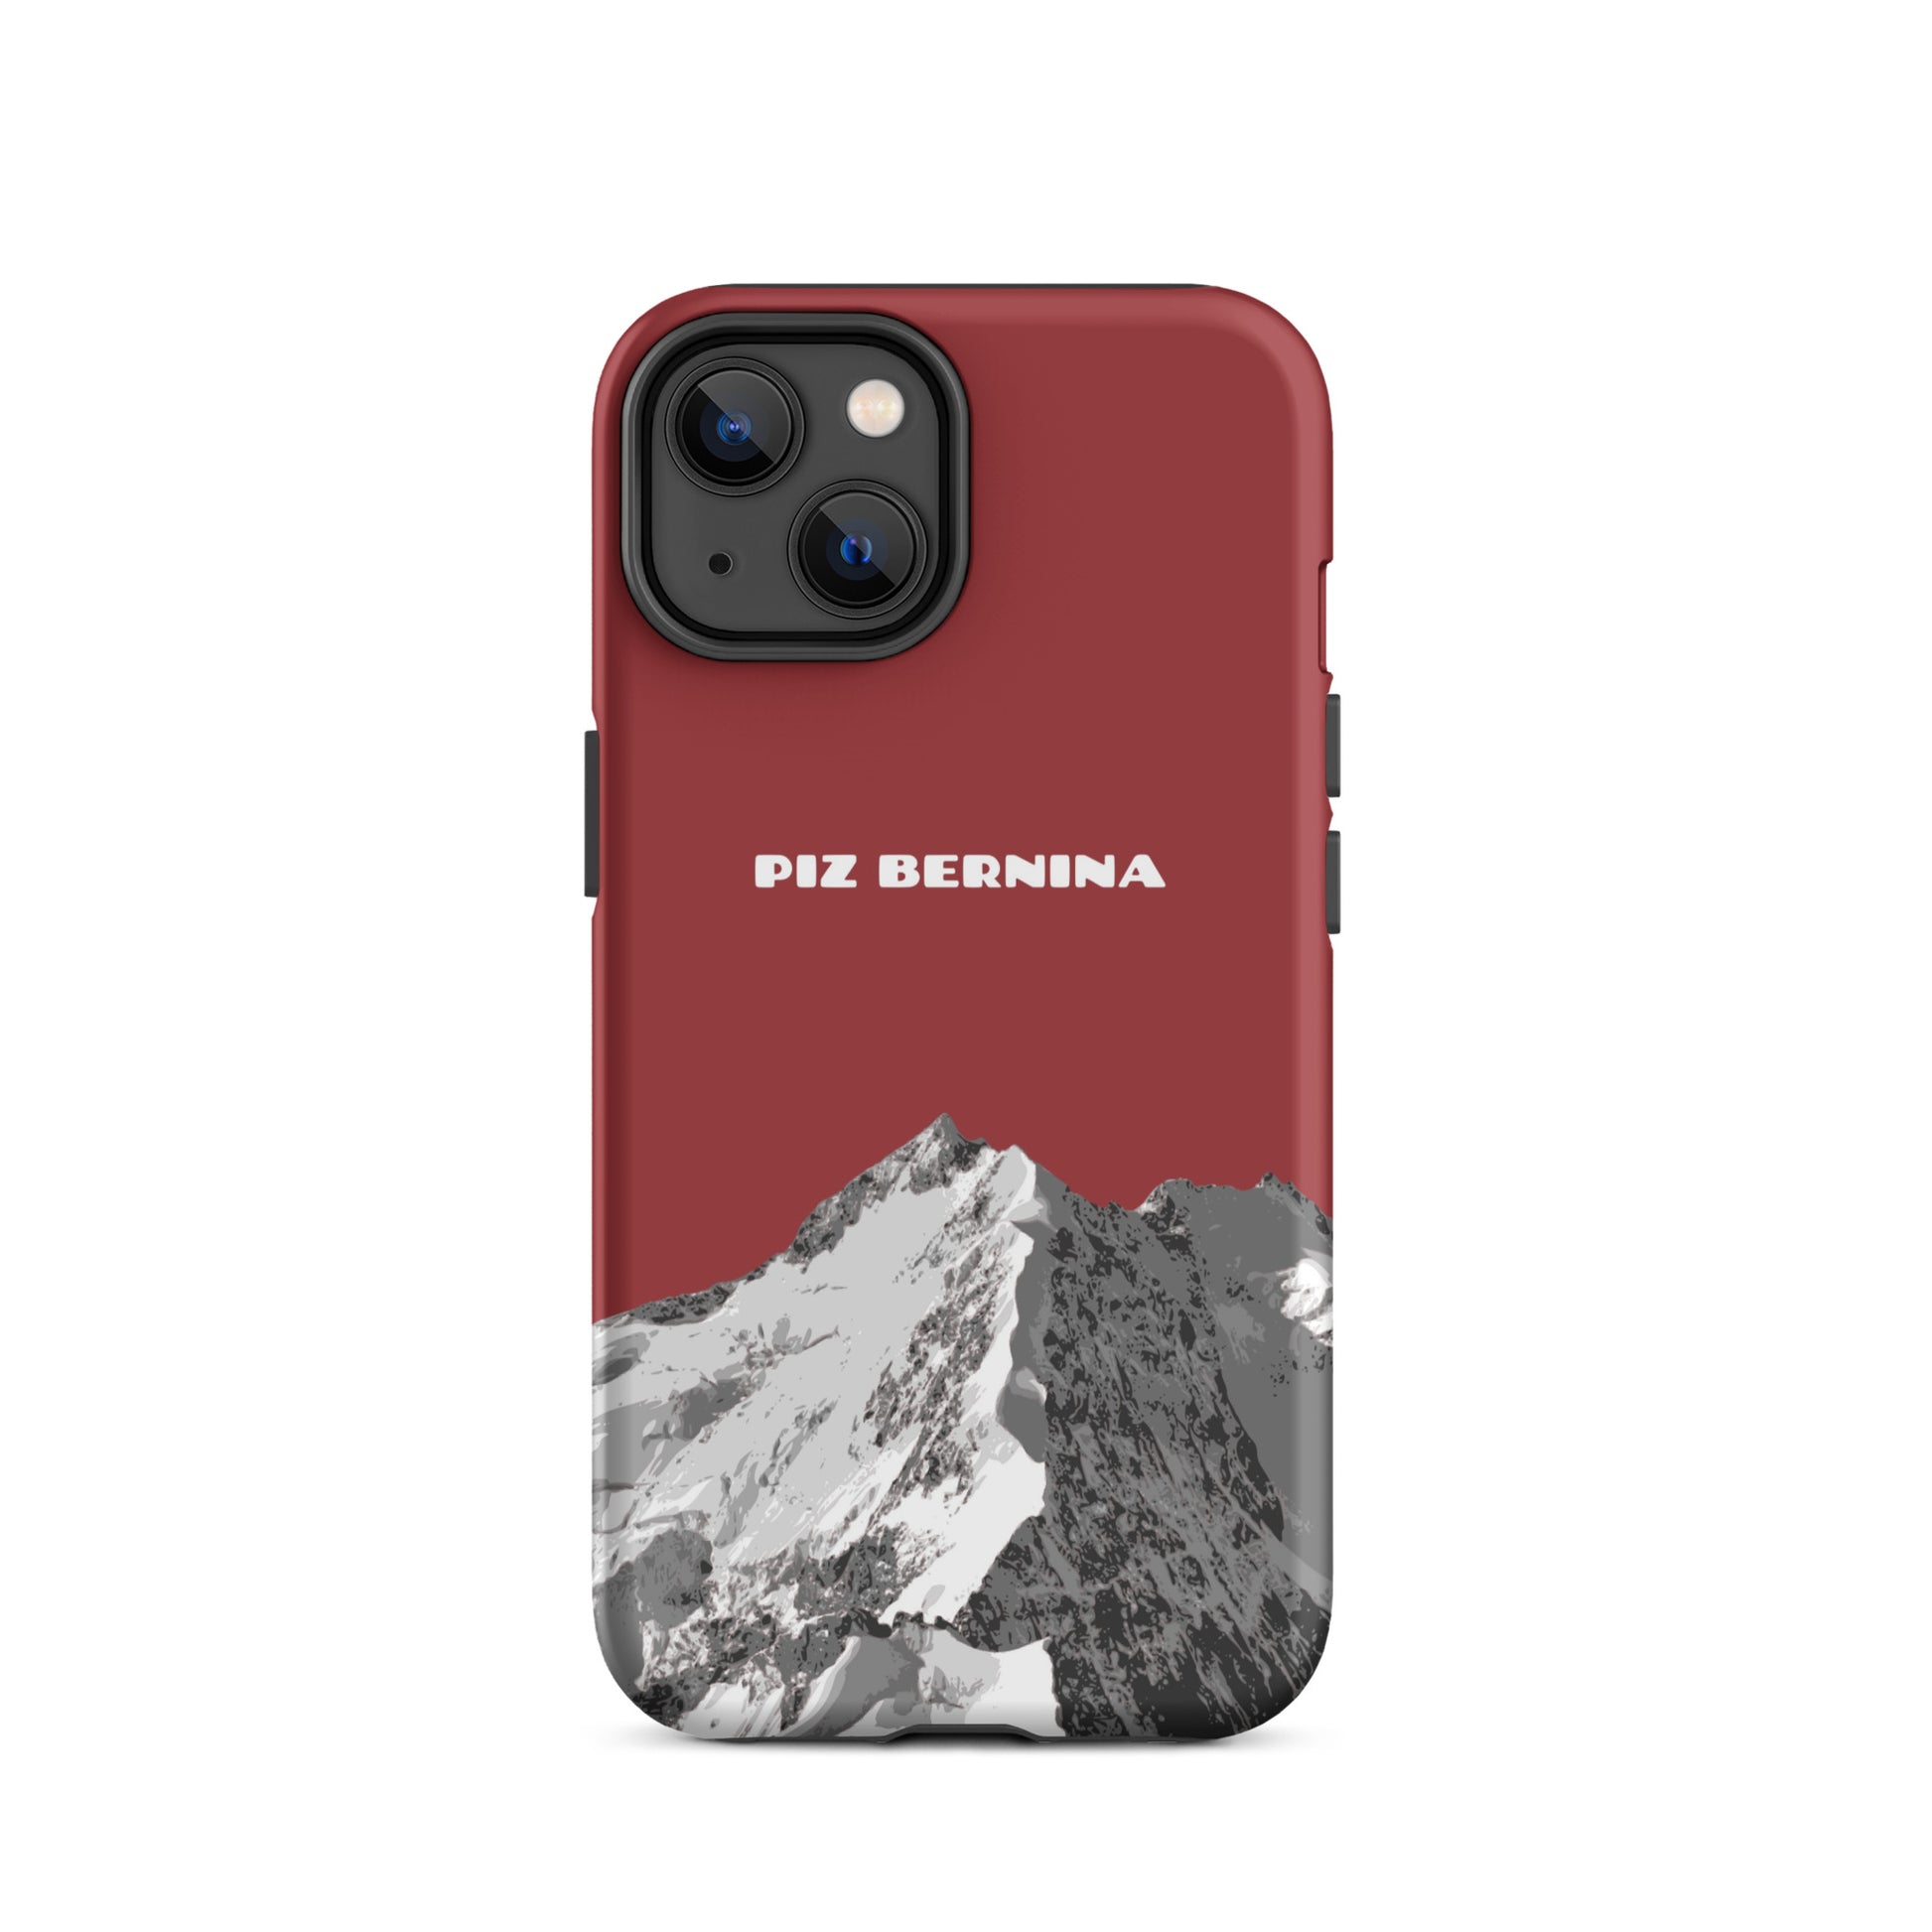 Hülle für das iPhone 14 von Apple in der Farbe Rot, dass den Piz Bernina in Graubünden zeigt.